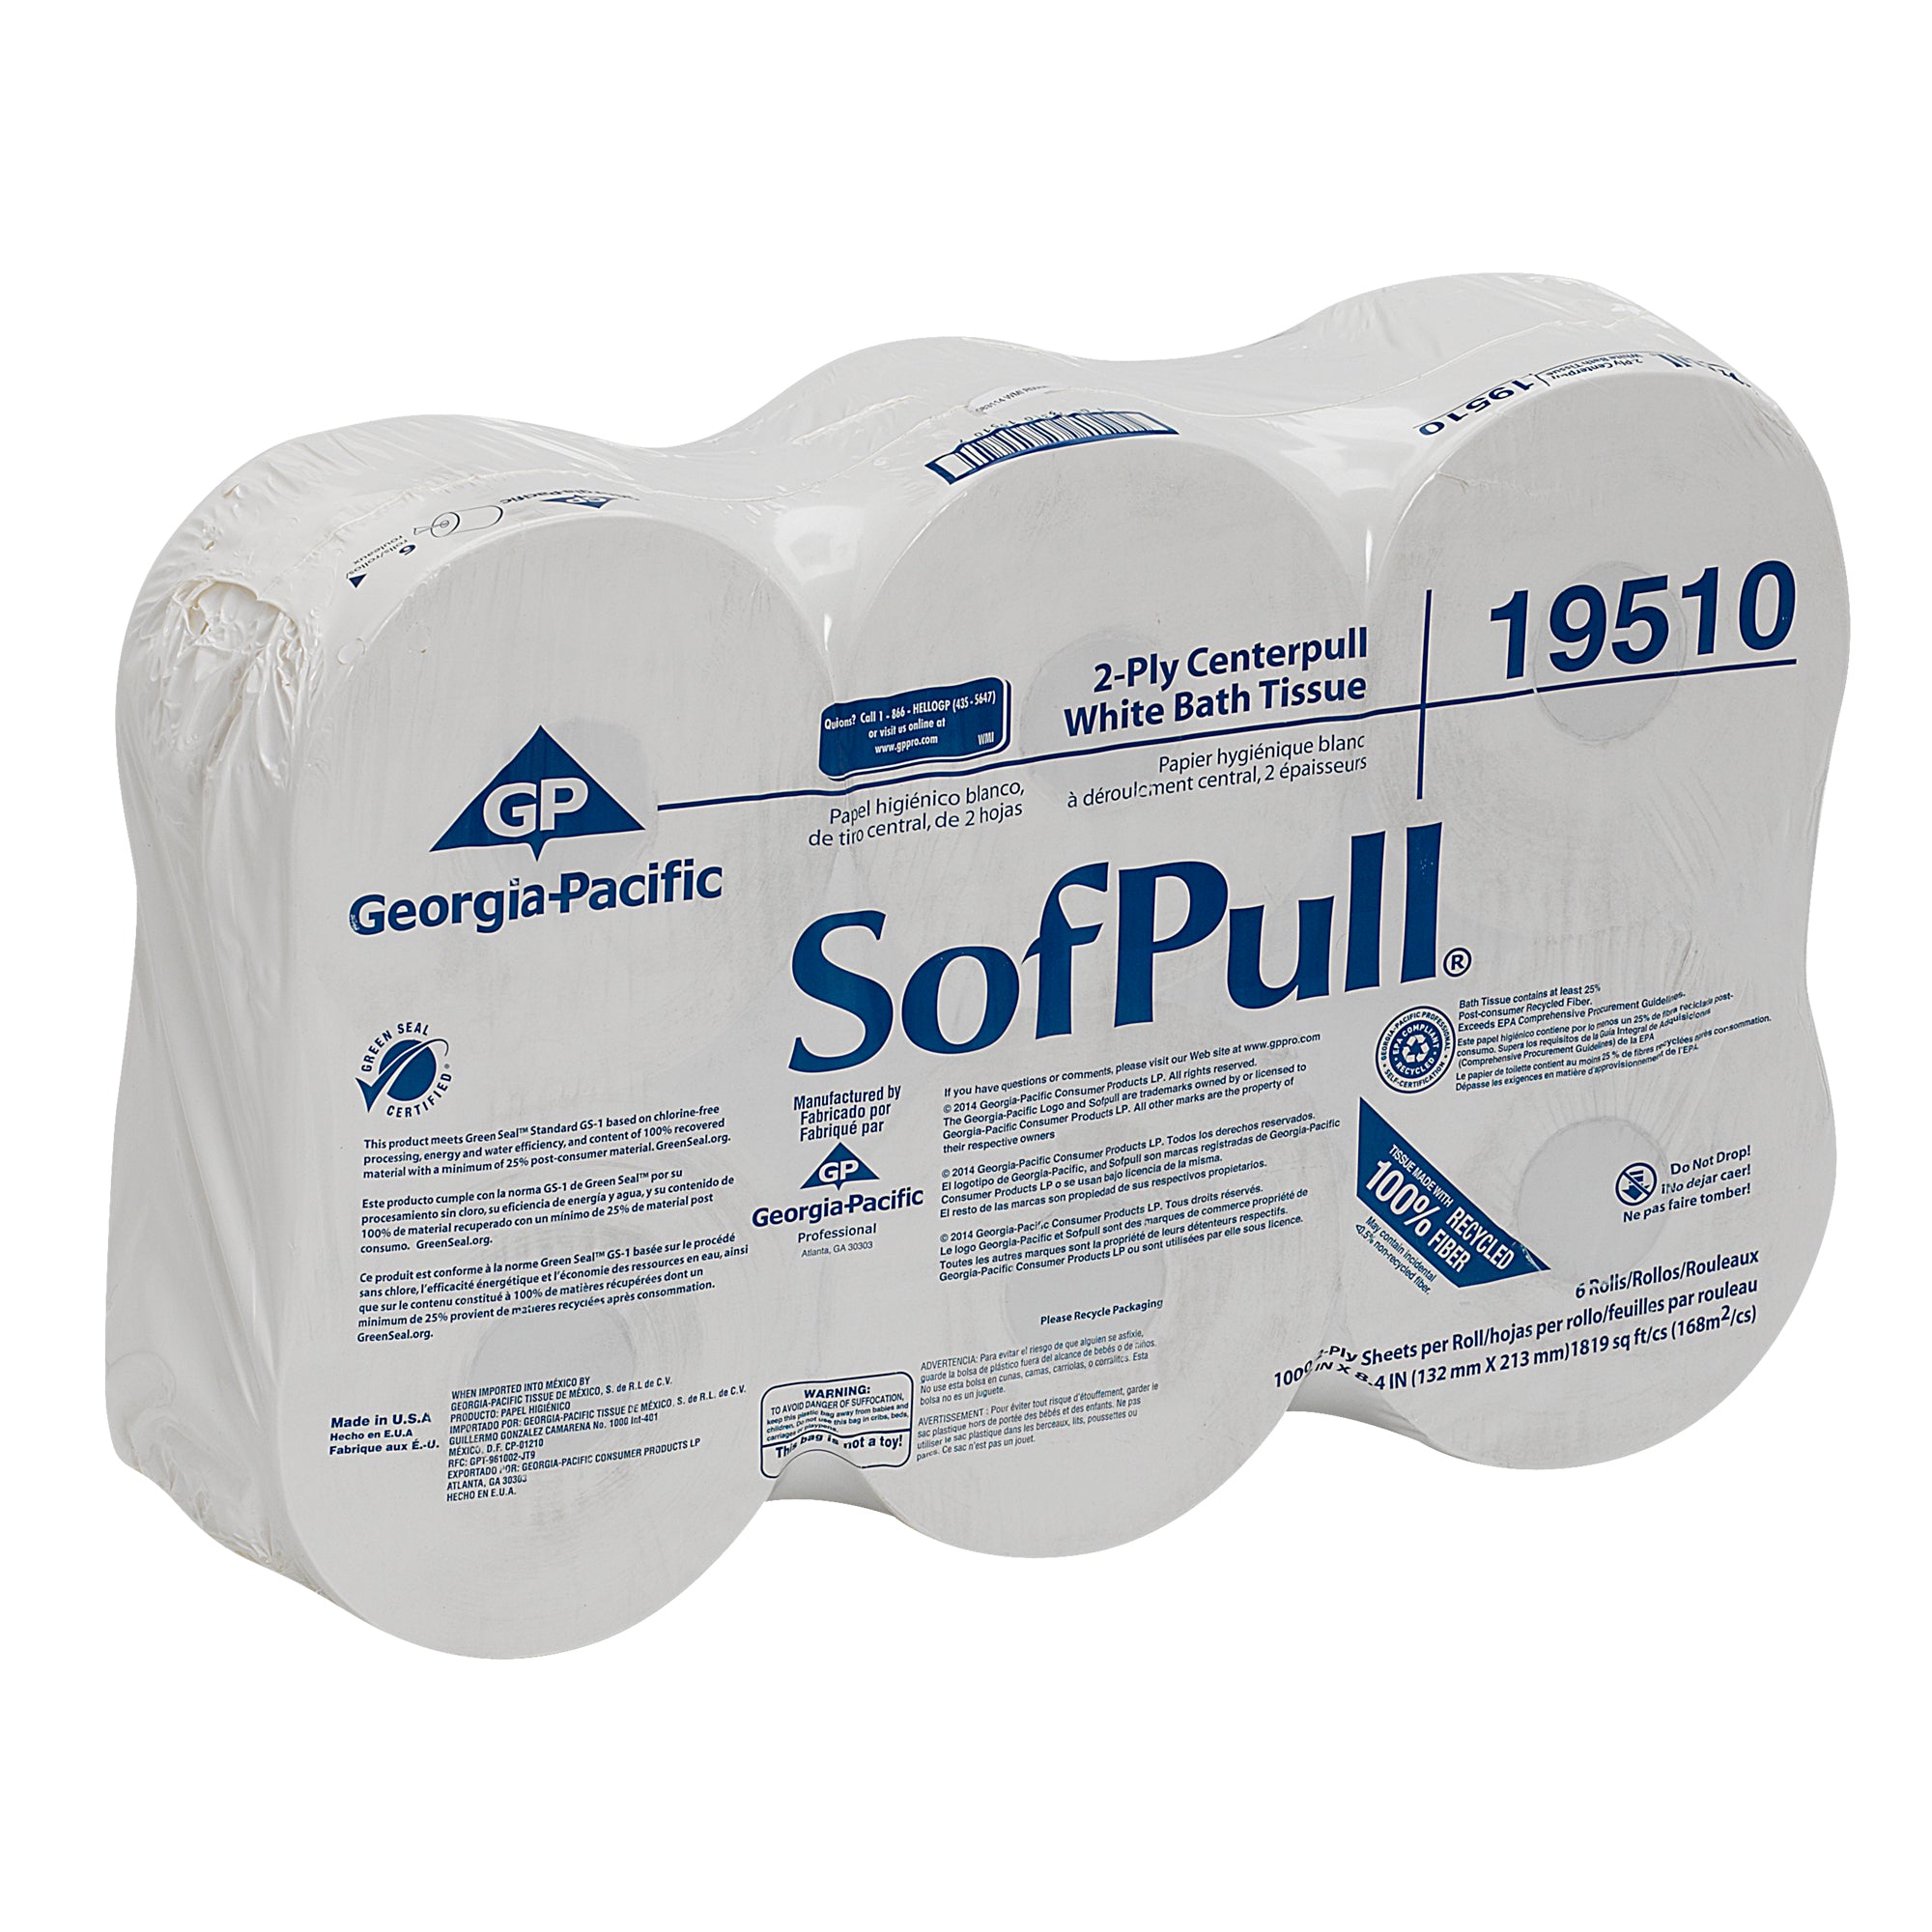 נייר טואלט בעלת קיבולת גבוהה דו-שכבתית SOFPULL® CENTERPULL מבית GP PRO (ג'ורג'יה פסיפיק), לבן, (6 גלילים של 213.36 מטרים סהכ 1280.16 מטרים) 6,000 גליונות למארז